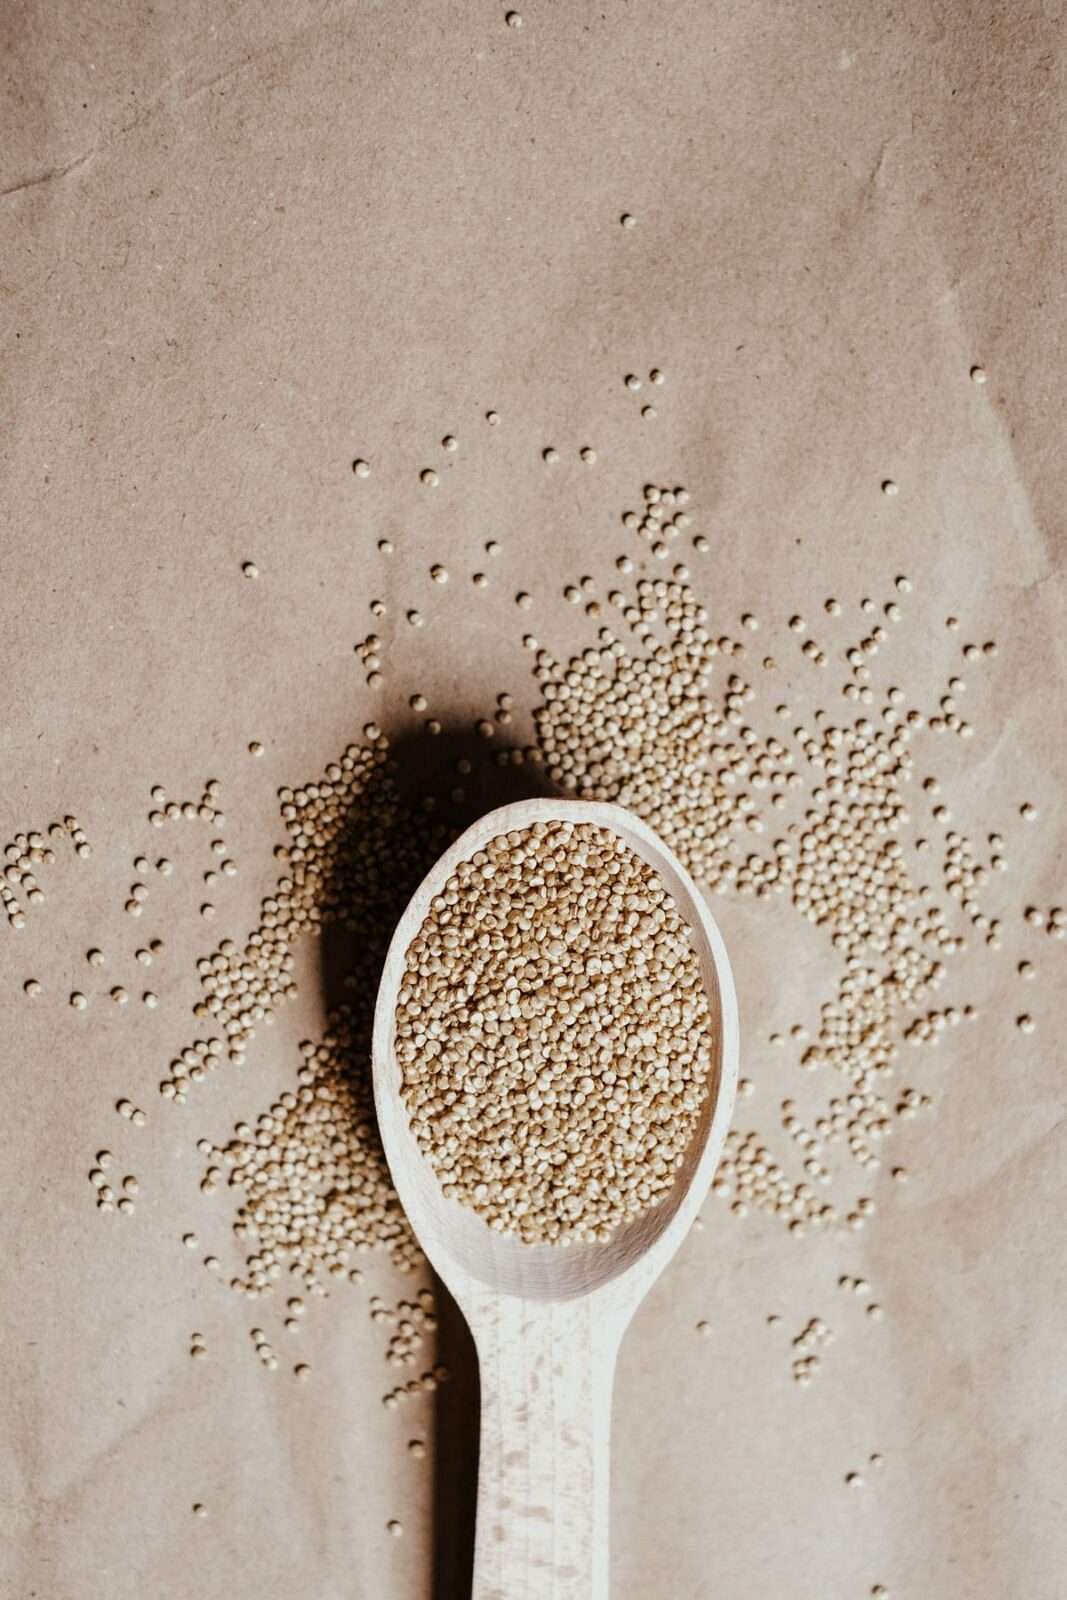 La quinoa è adatta ai cheto e a basso contenuto di carboidrati?